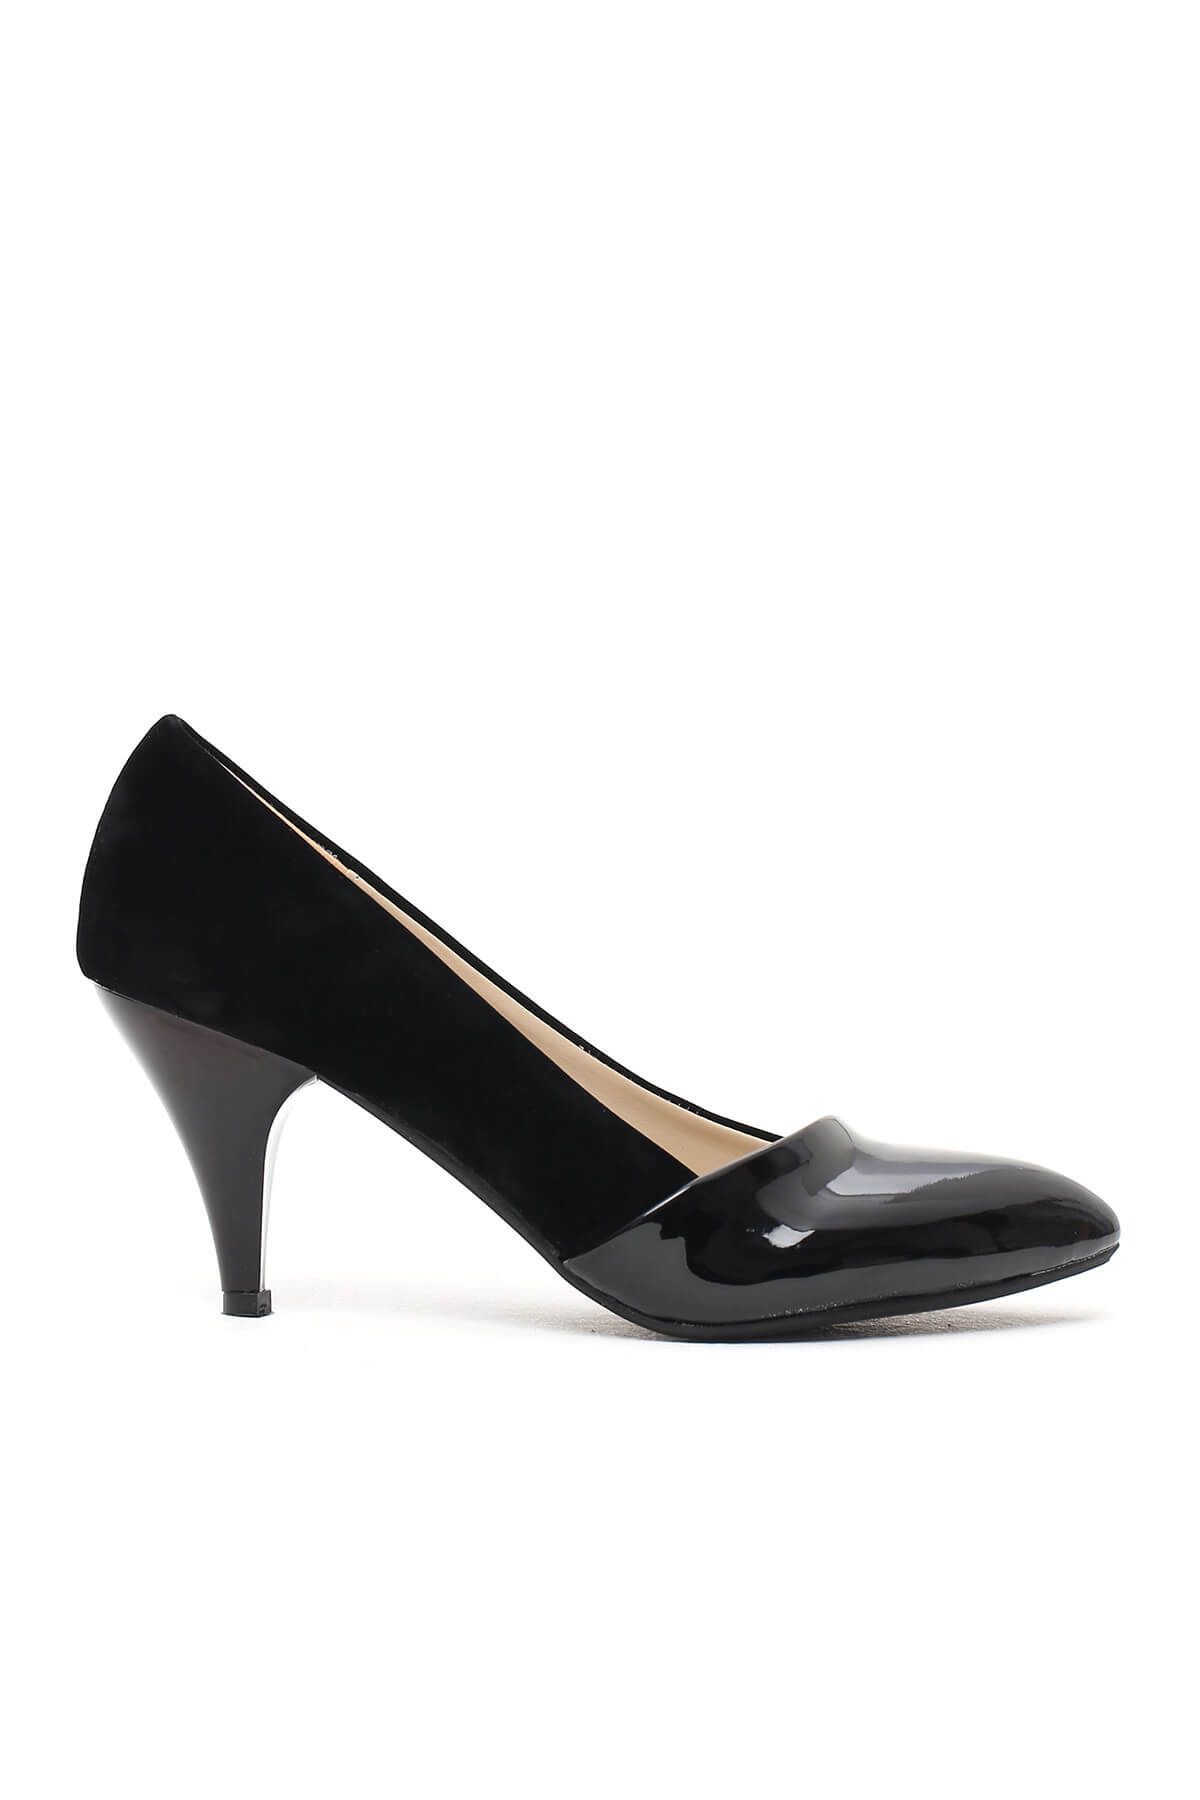 Y-London Siyah Süet Kadın Topuklu Ayakkabı 569-18-011